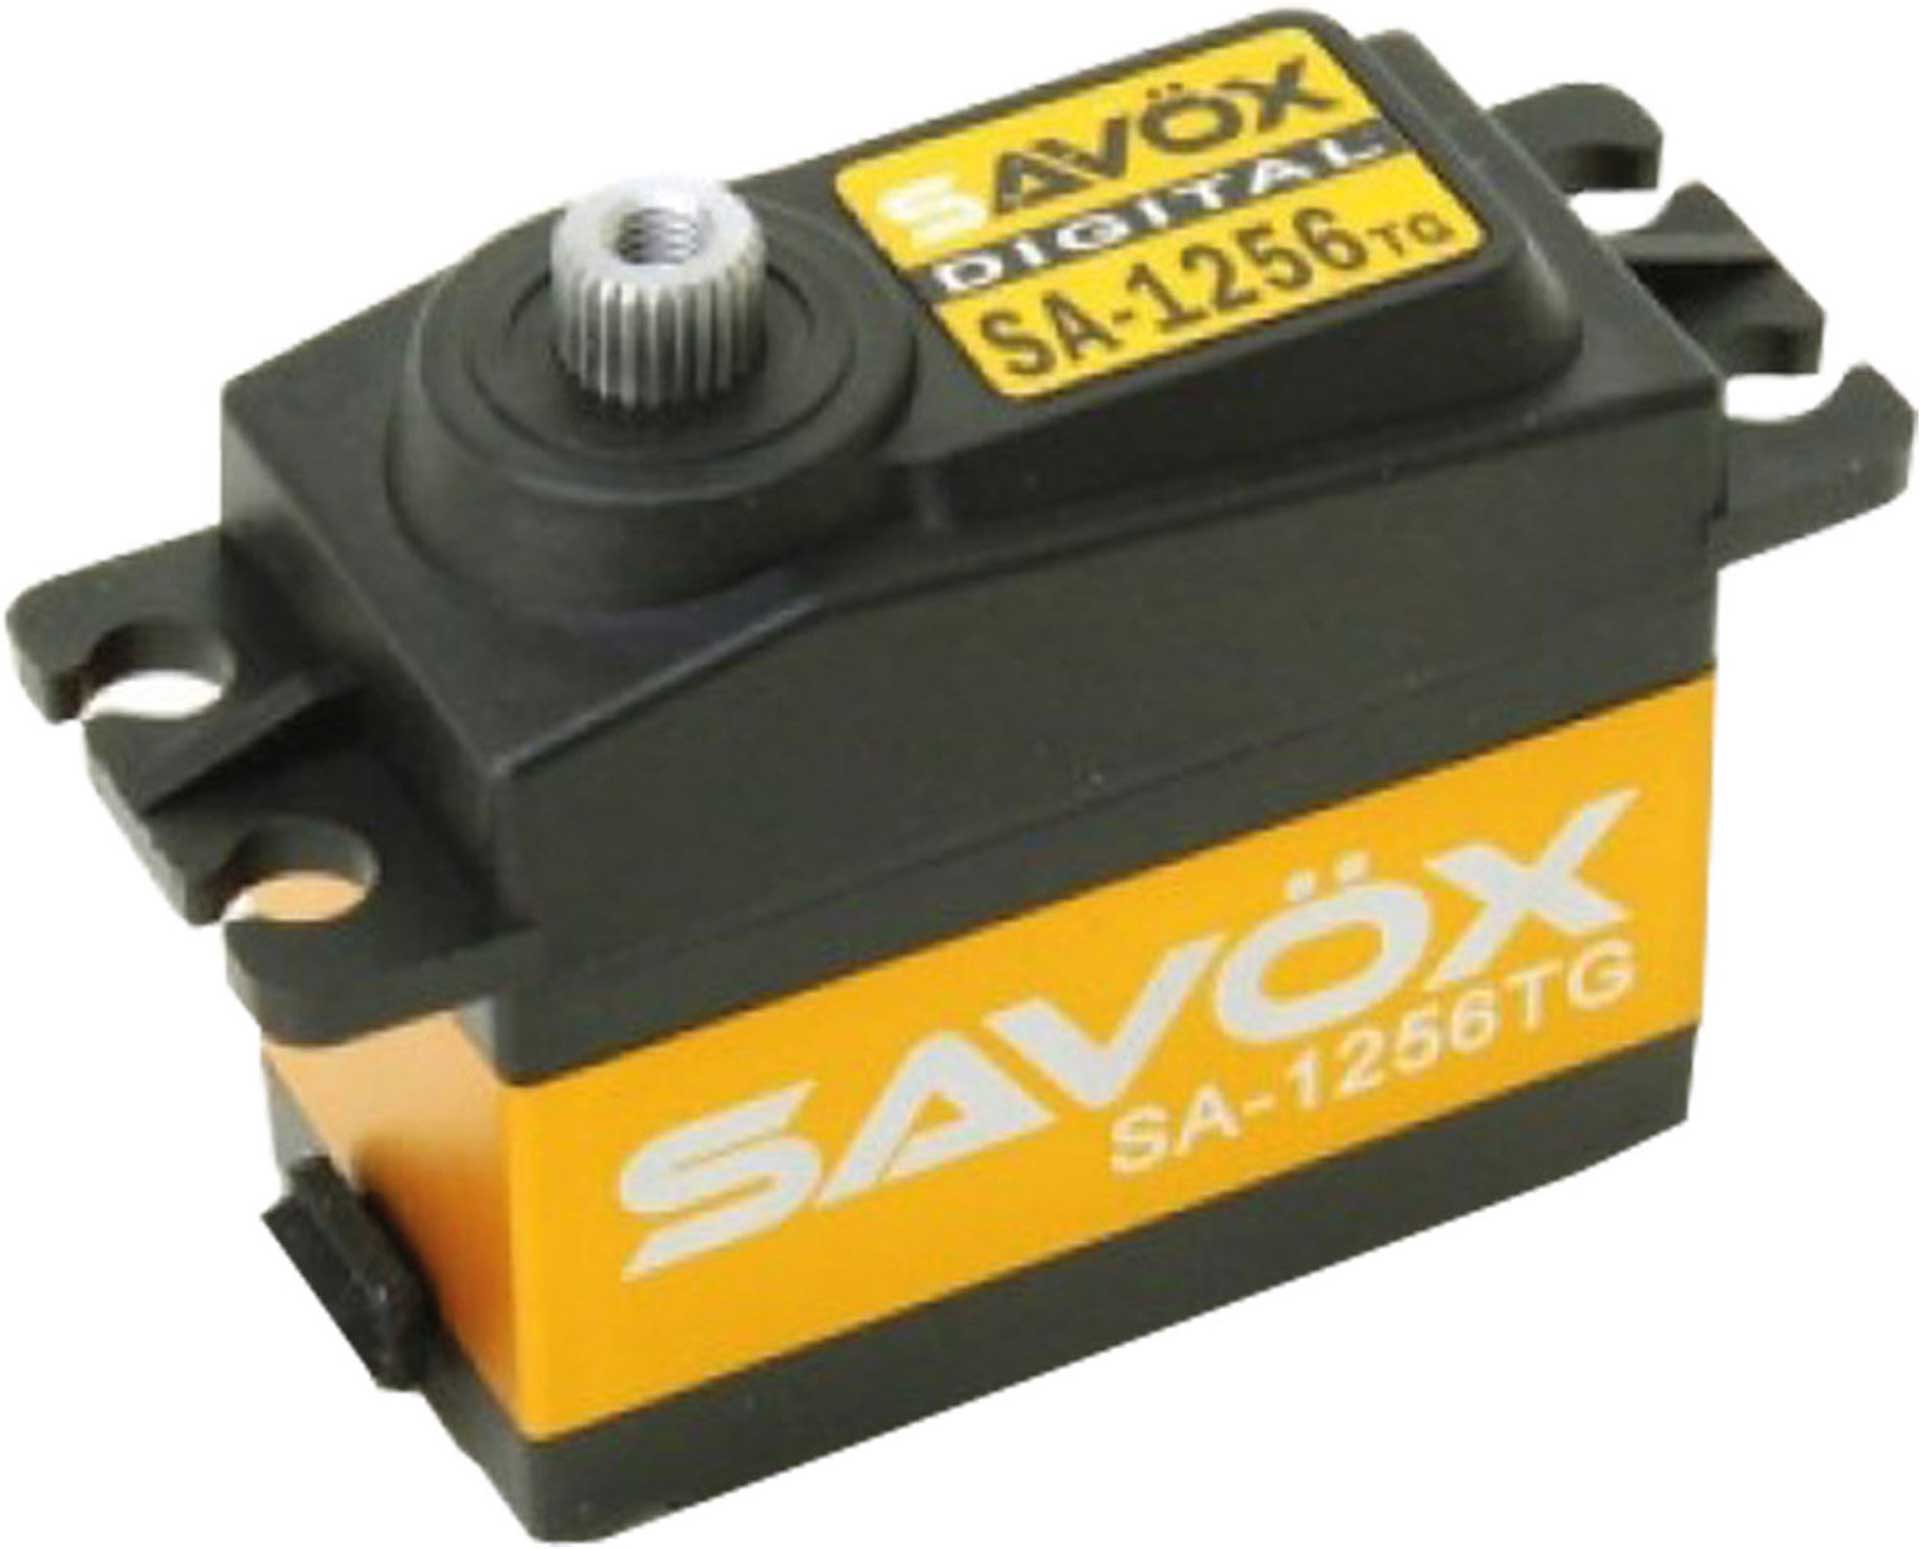 SAVÖX SA-1256TG (6V/20KG/0,15s) DIGITAL SERVO